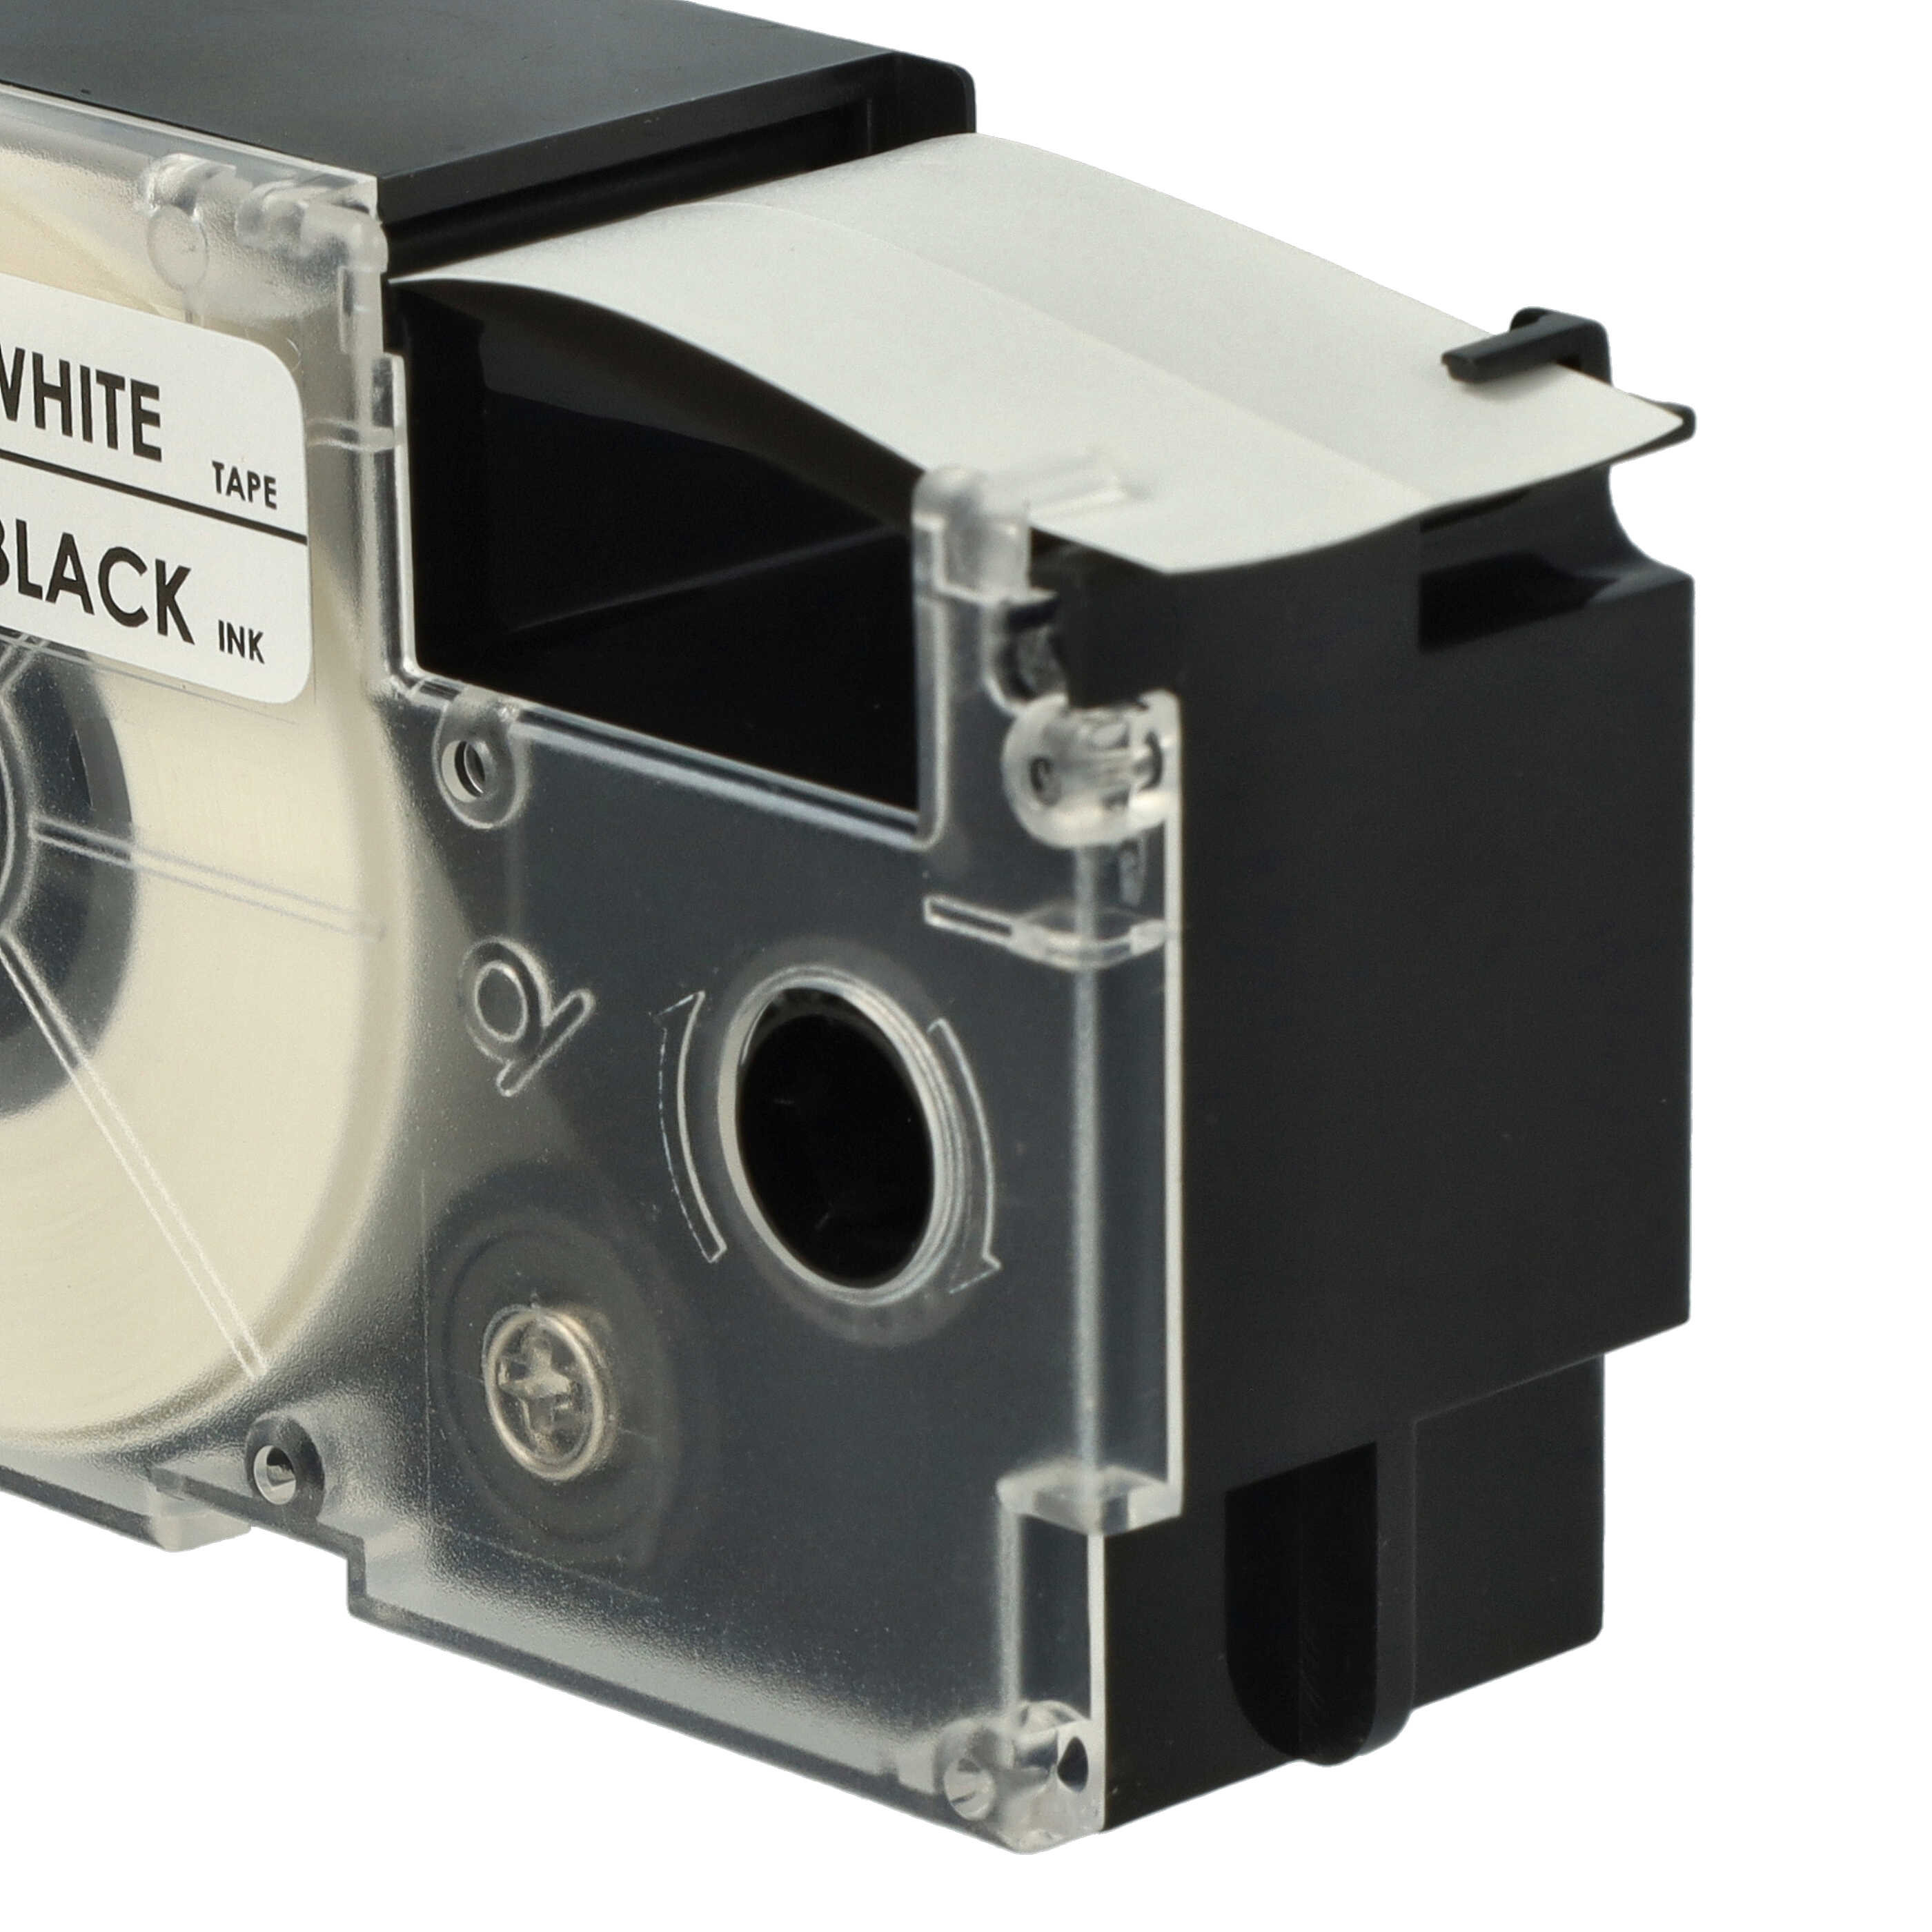 5x Casete cinta escritura reemplaza Casio XR-24WE1 Negro su Blanco